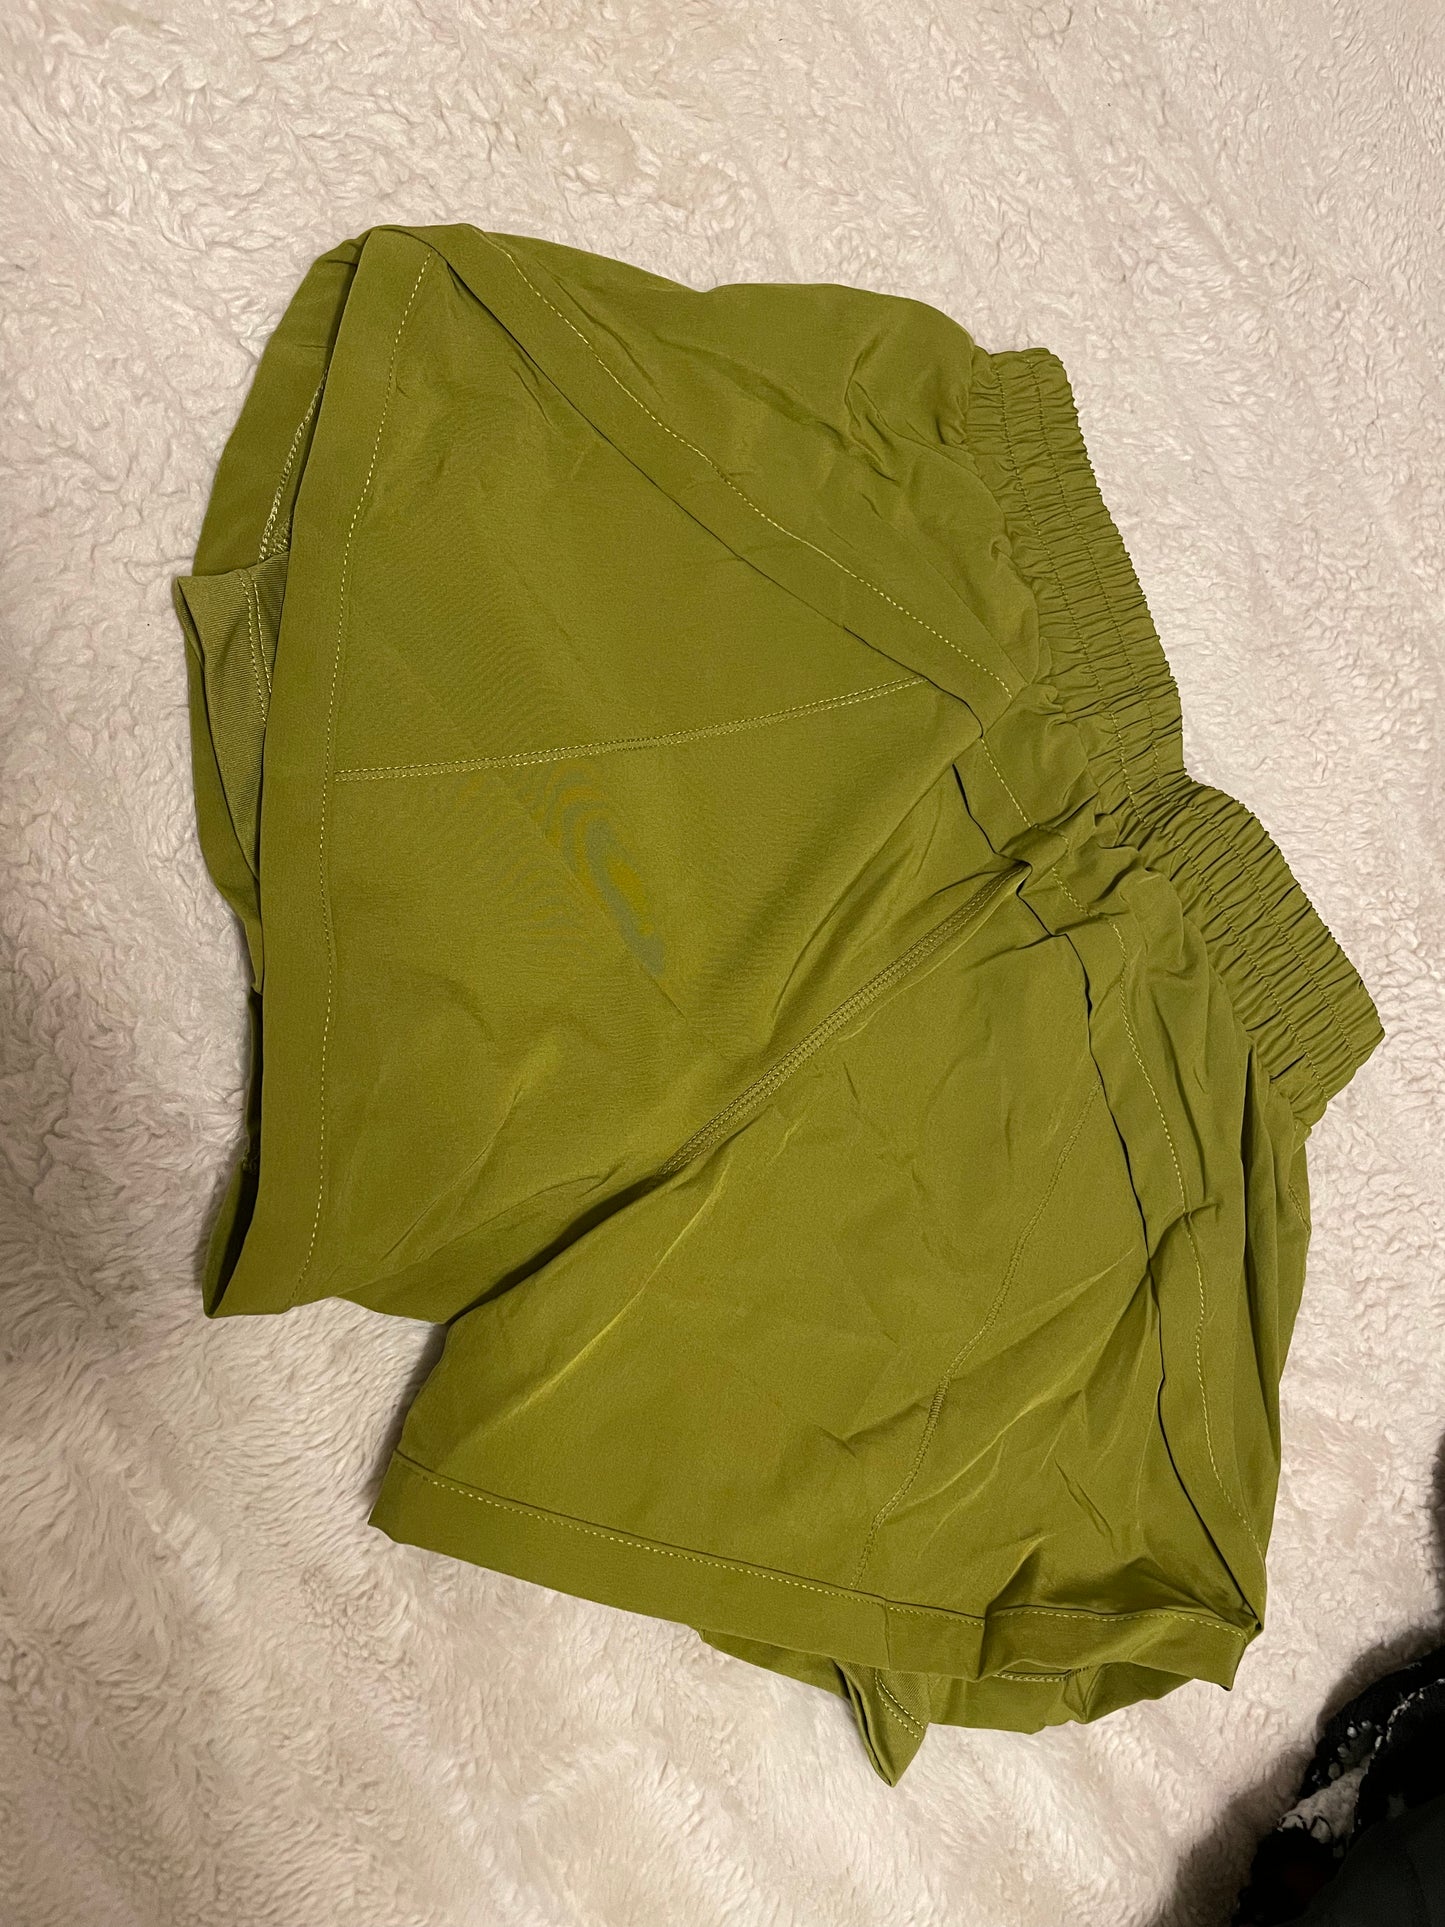 Green Tea Shorts in